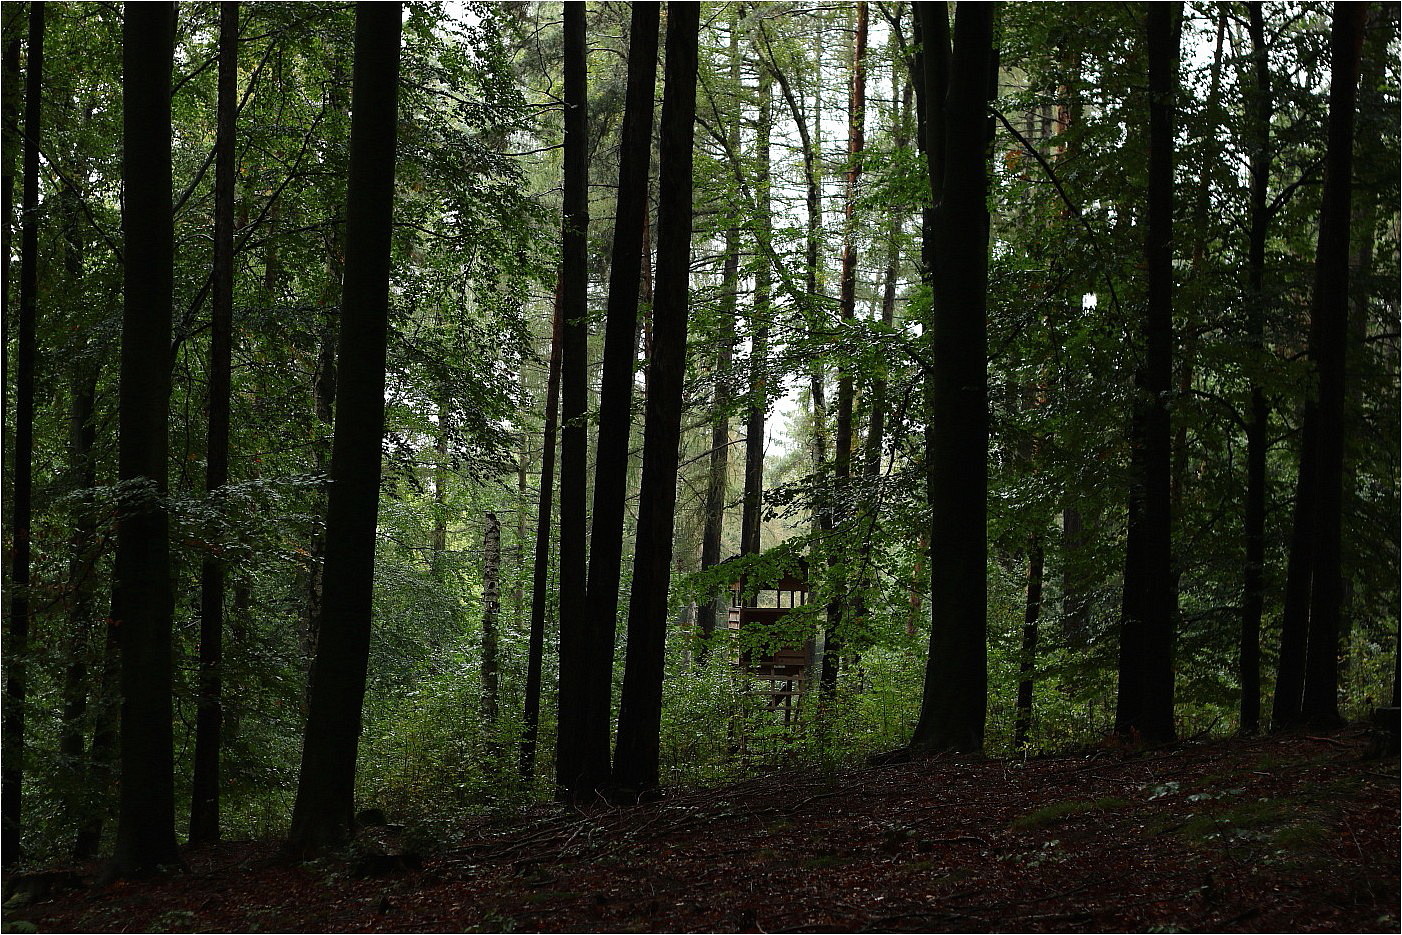 Im Regenwald (2)